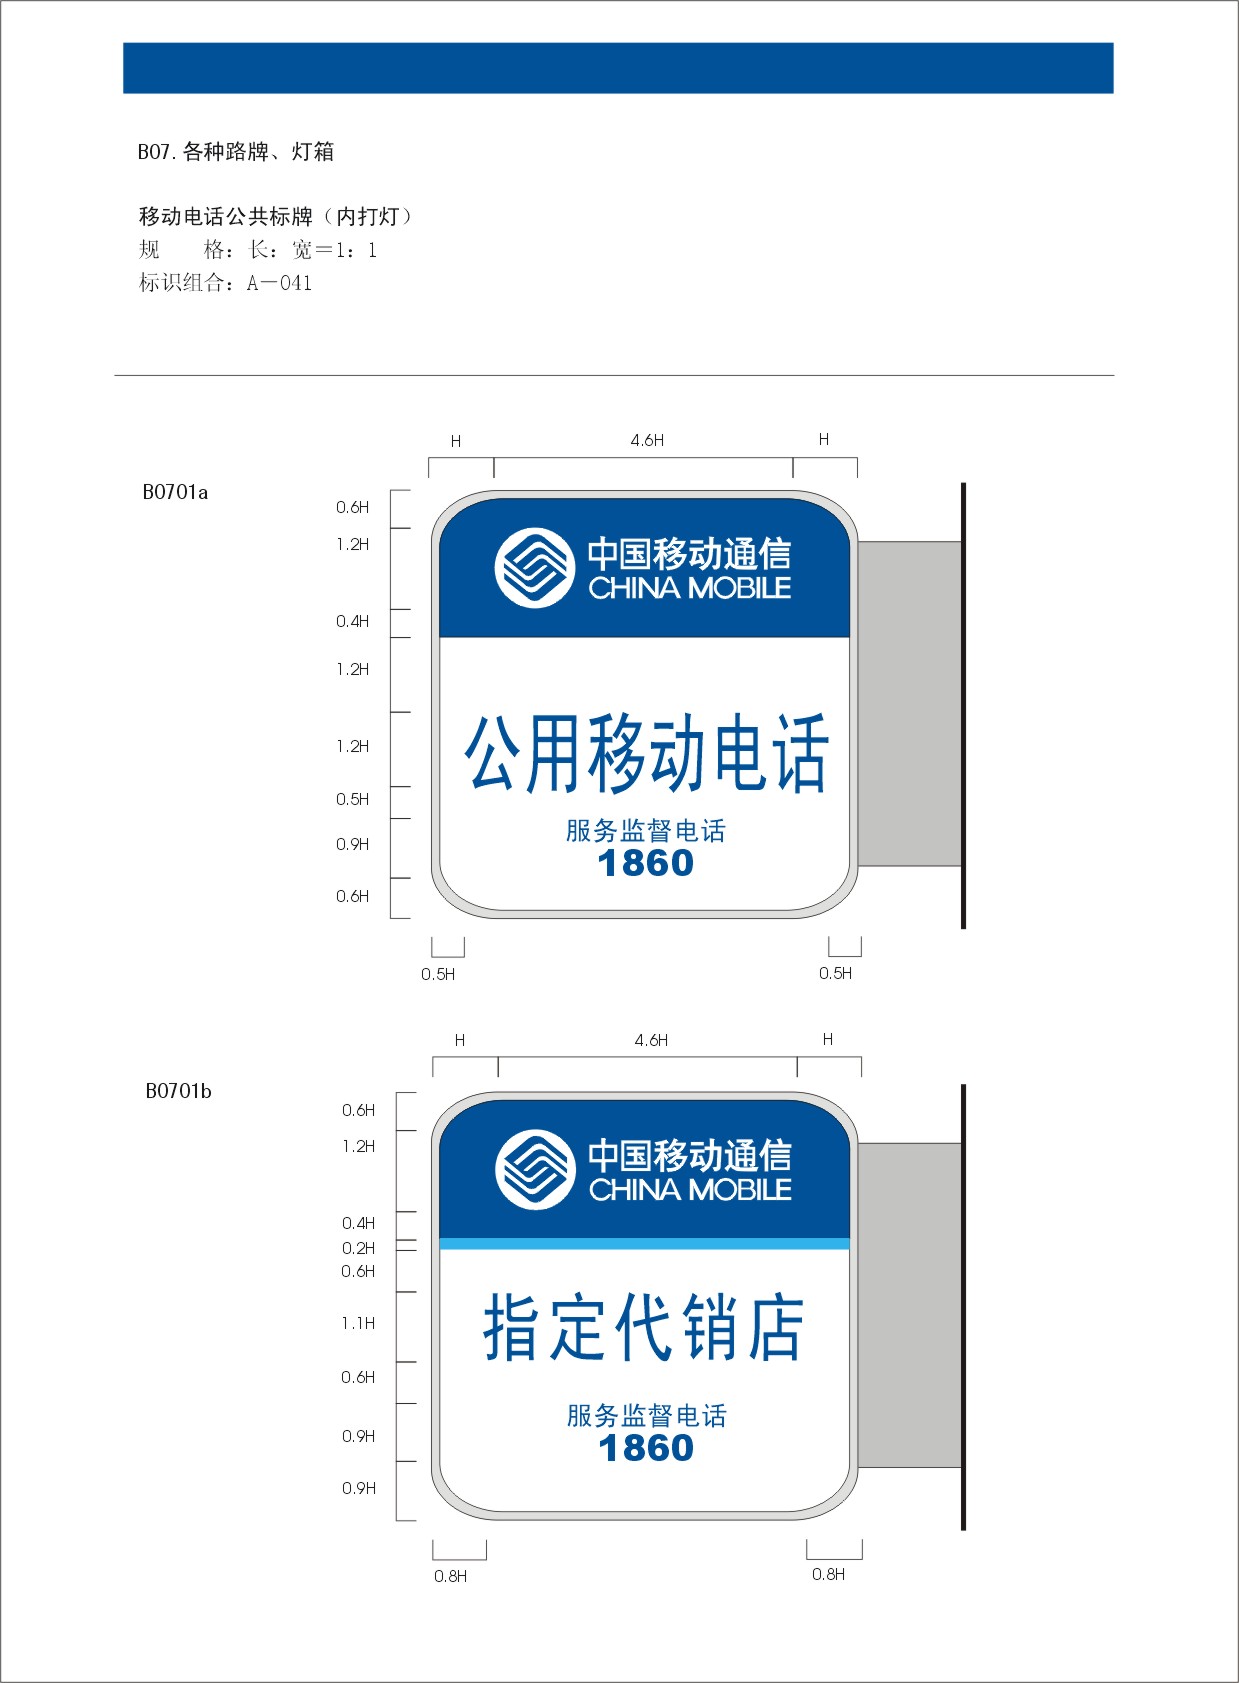 中国移动图片-整套VI矢量素材图 服务热线 公用